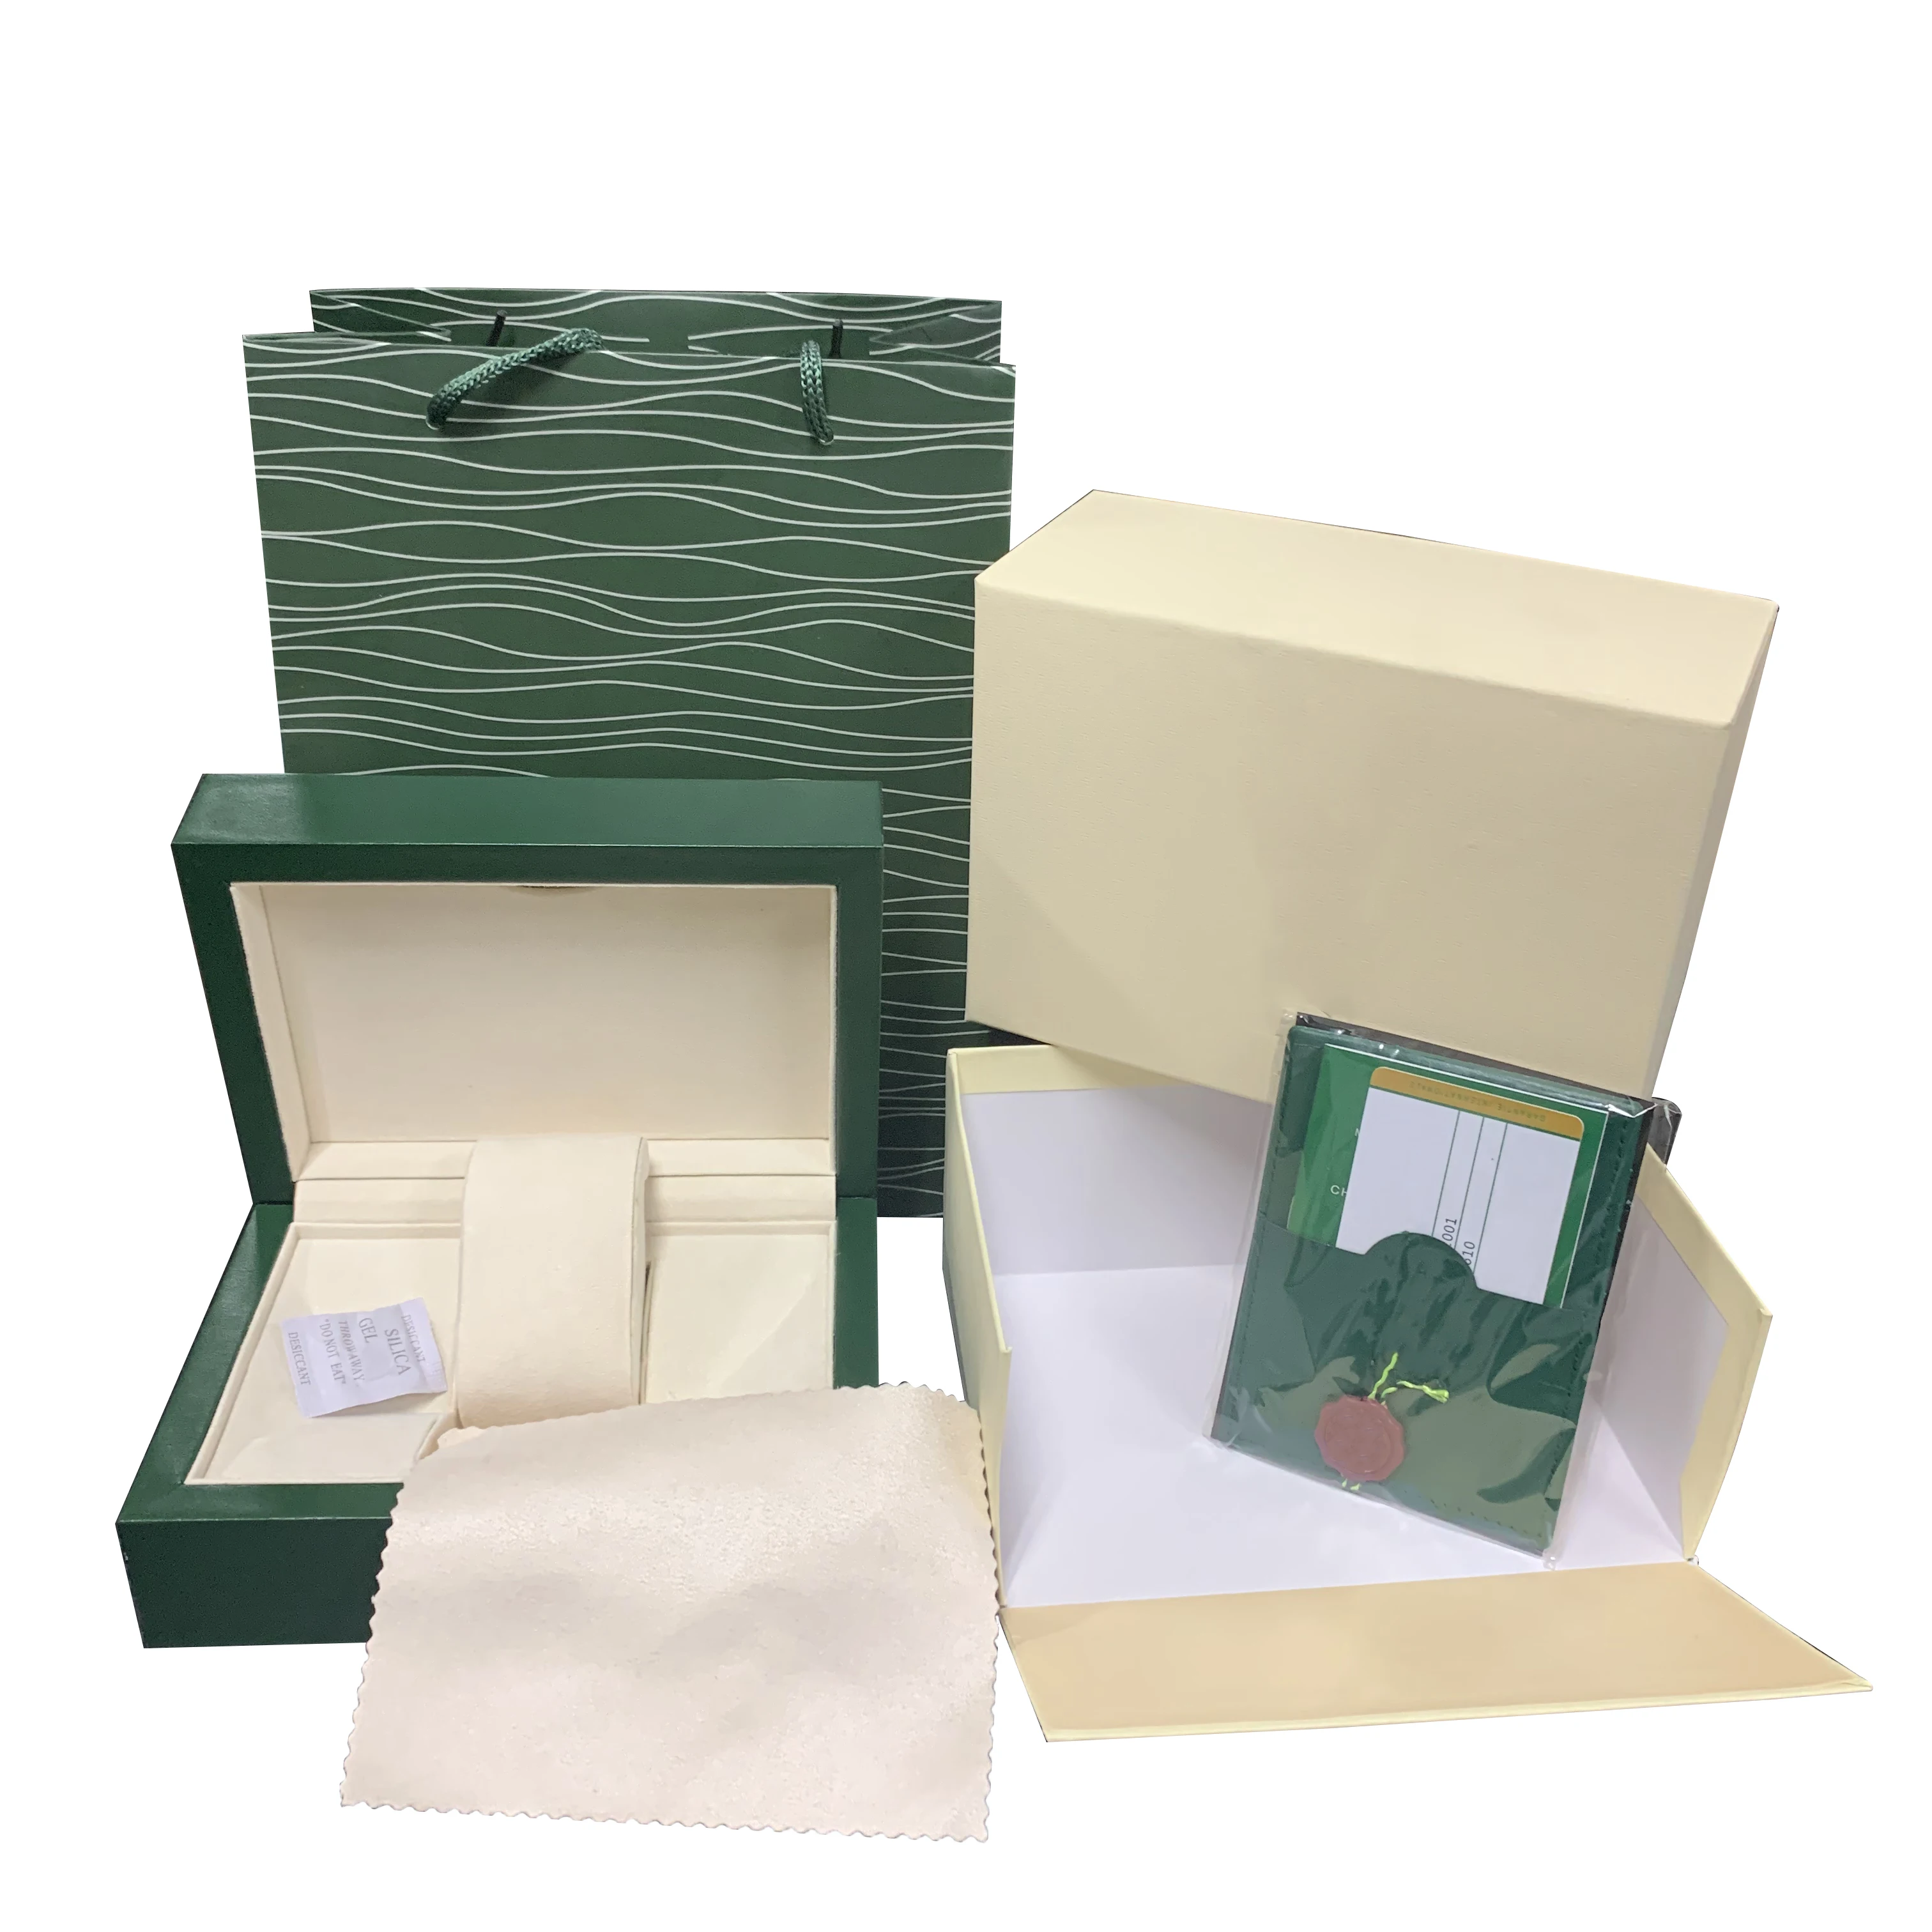 

Заводской поставщик, роскошный бренд, зеленый с оригинальной деревянной коробкой для часов, бумажник для карт, чехлы, наручные часы AAA